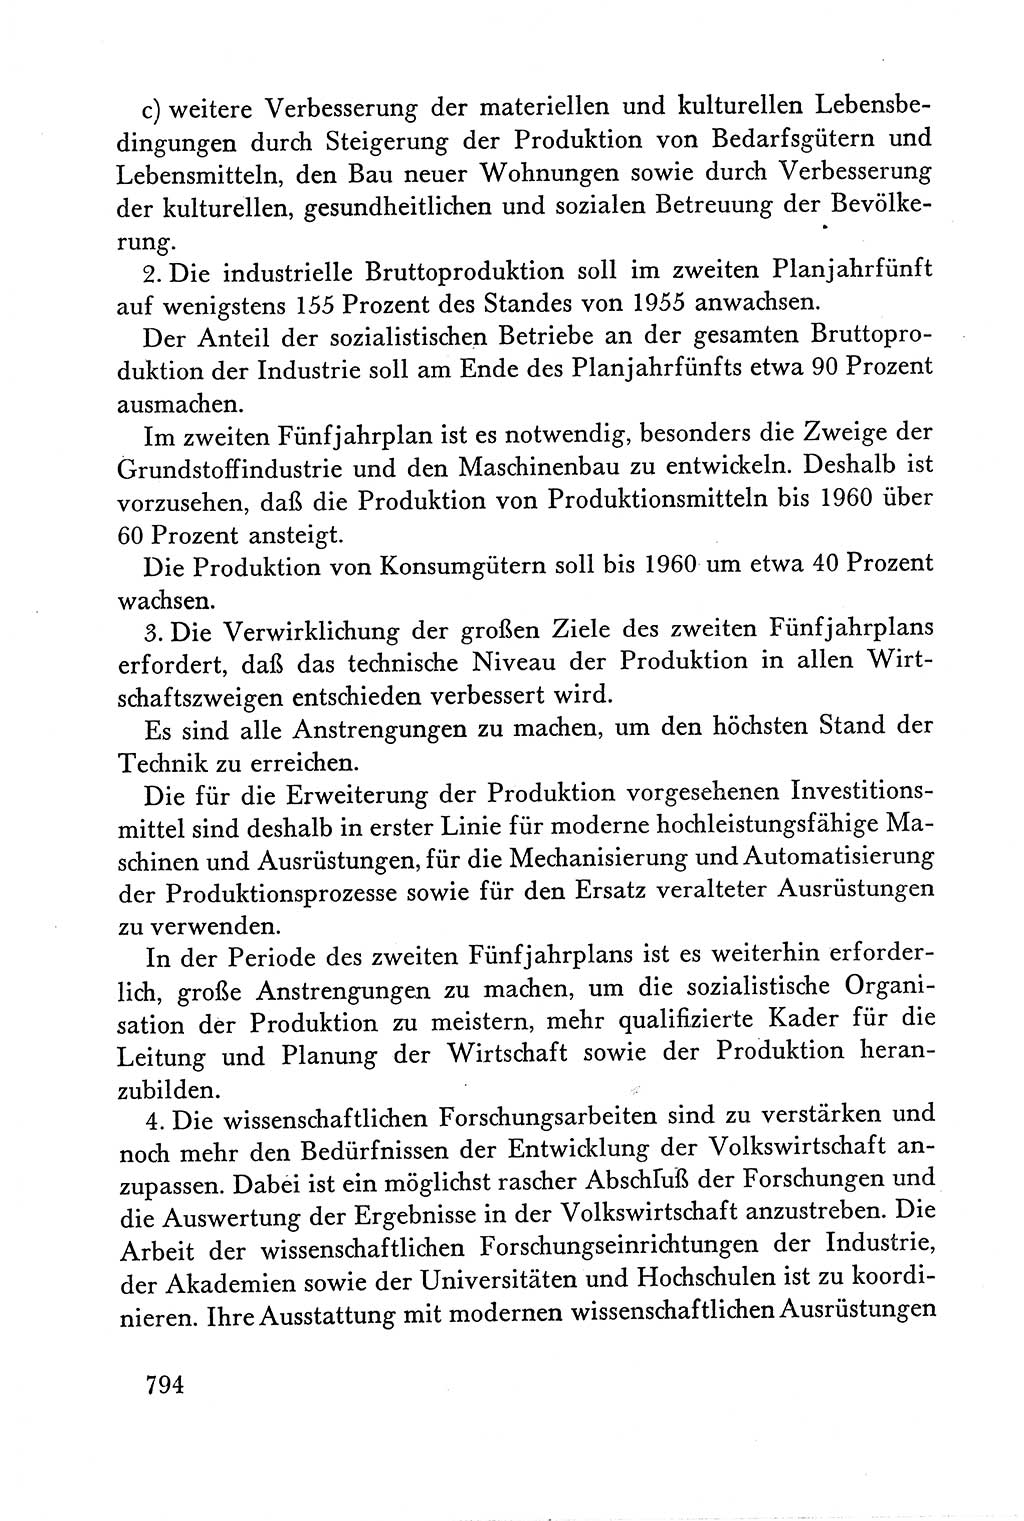 Dokumente der Sozialistischen Einheitspartei Deutschlands (SED) [Deutsche Demokratische Republik (DDR)] 1958-1959, Seite 794 (Dok. SED DDR 1958-1959, S. 794)